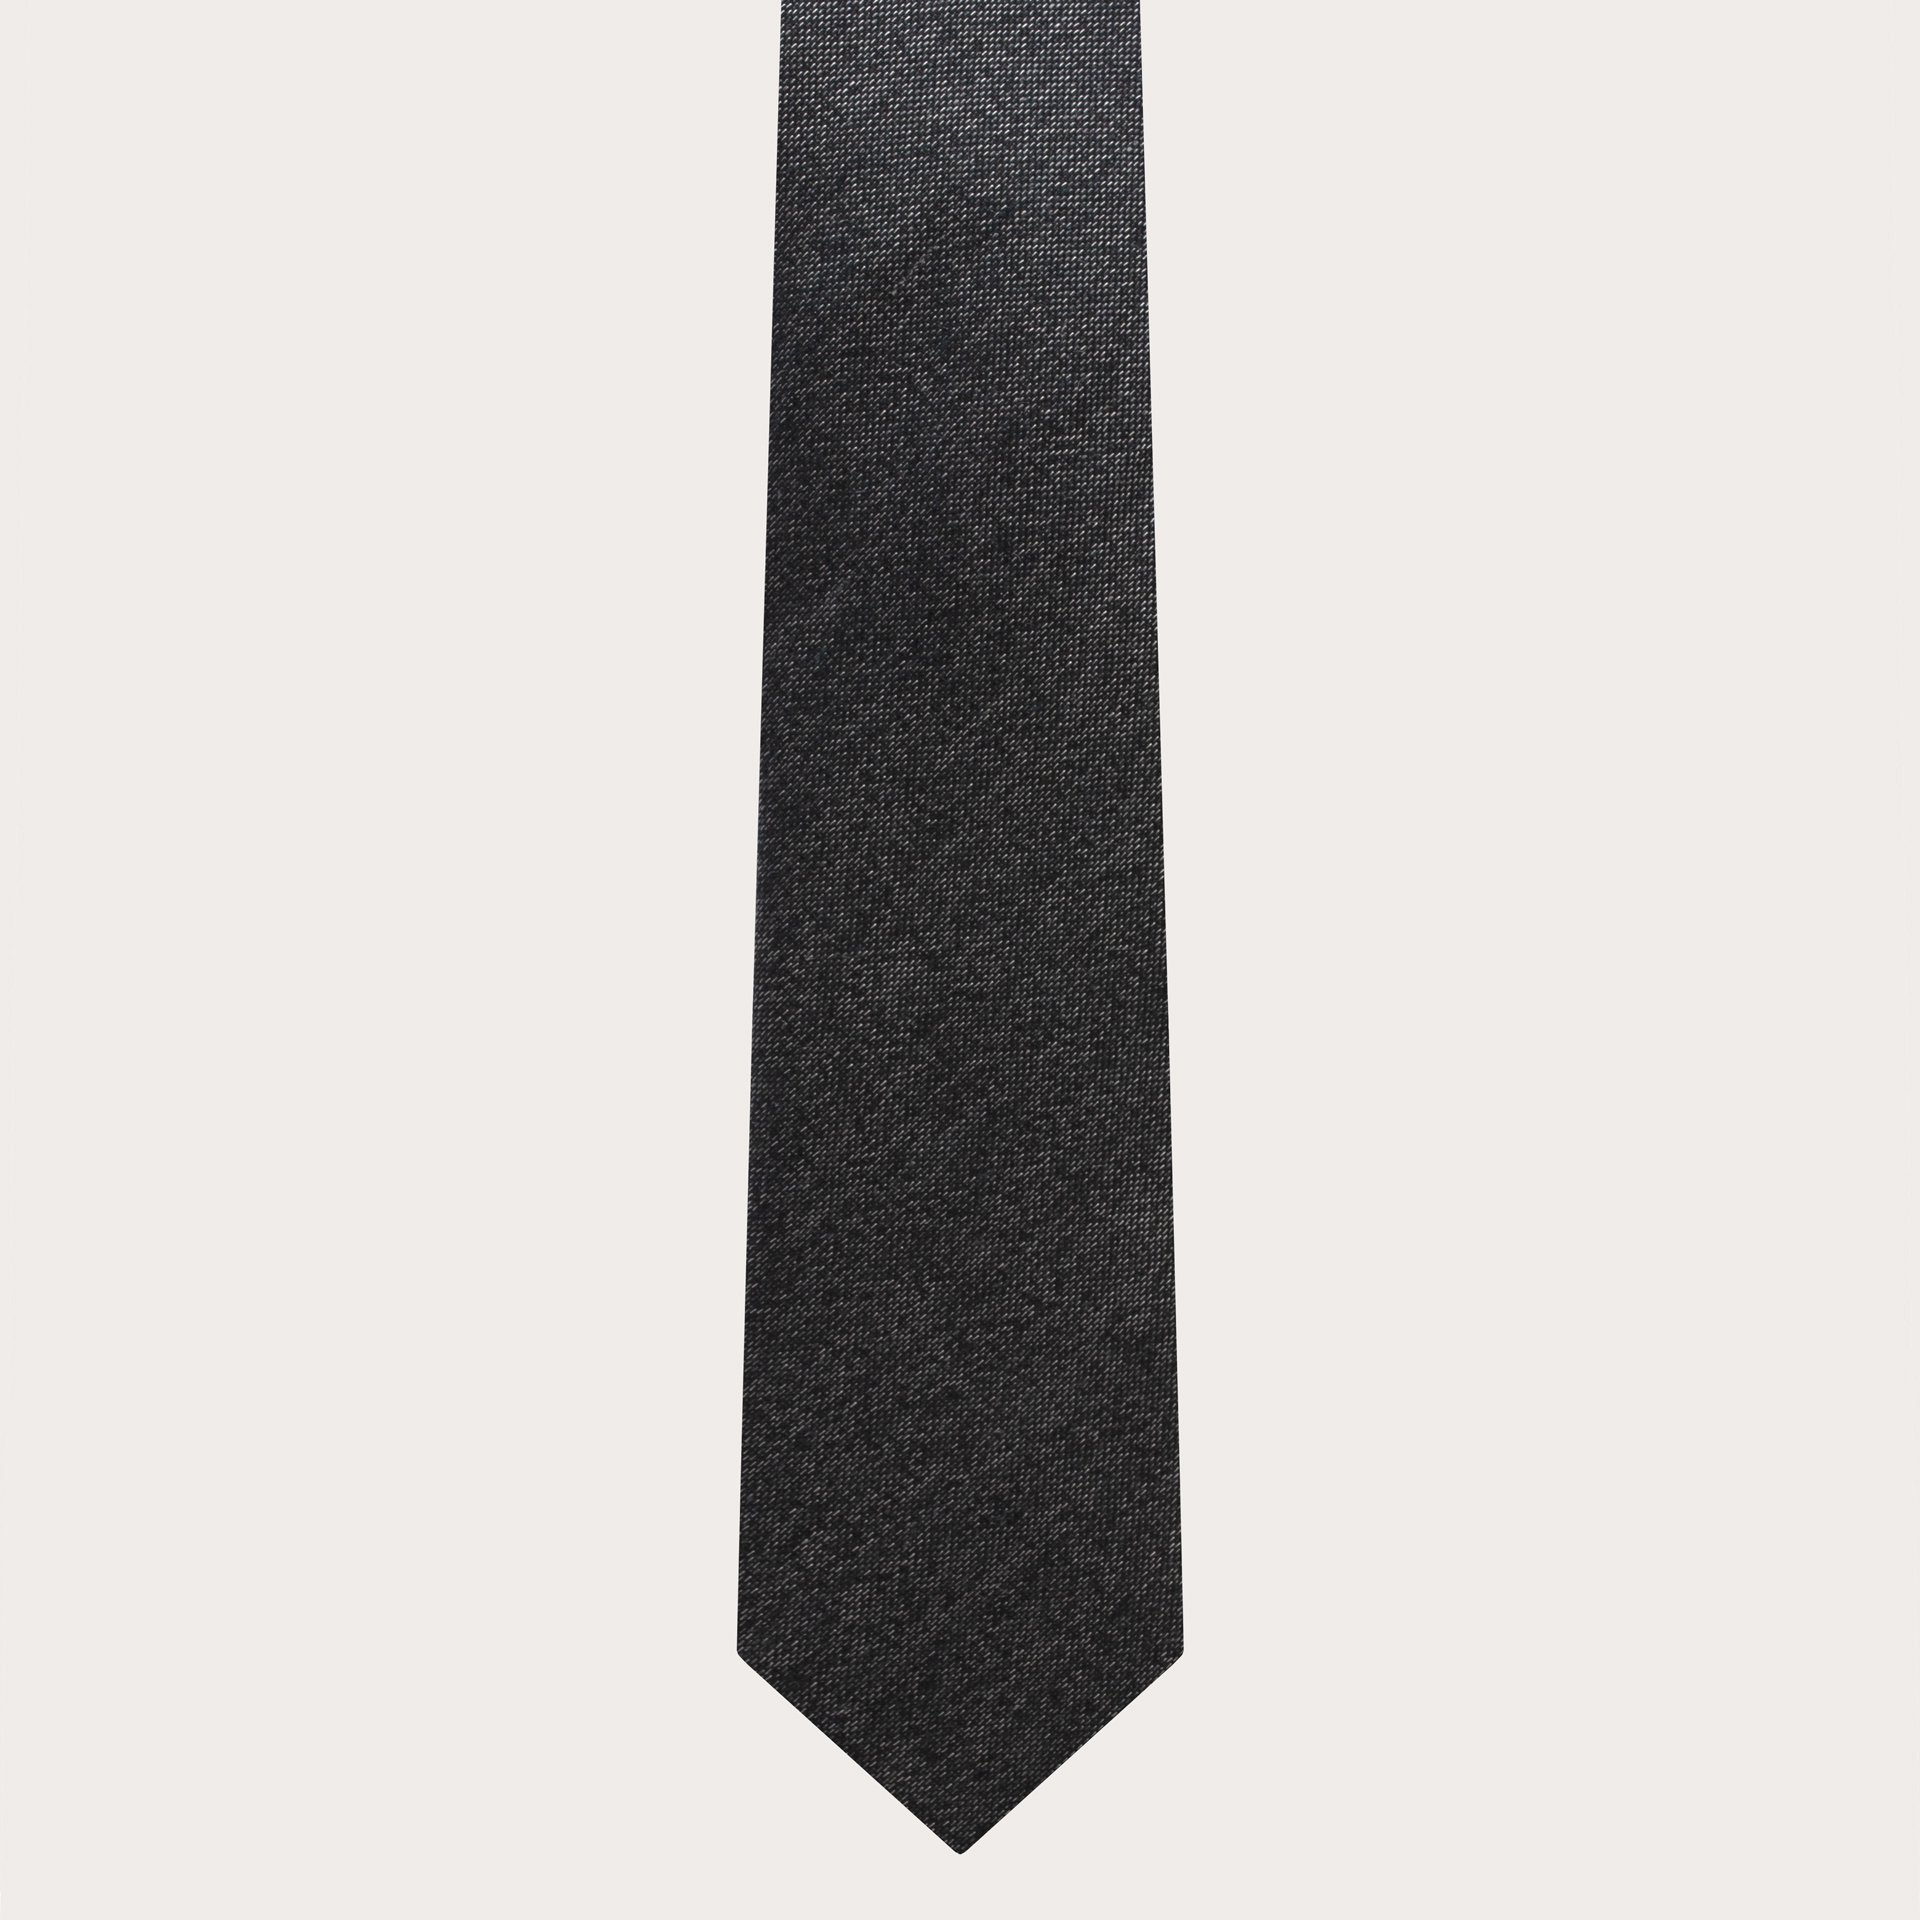 BRUCLE Cravate étroite pour homme en soie jacquard gris foncé chiné